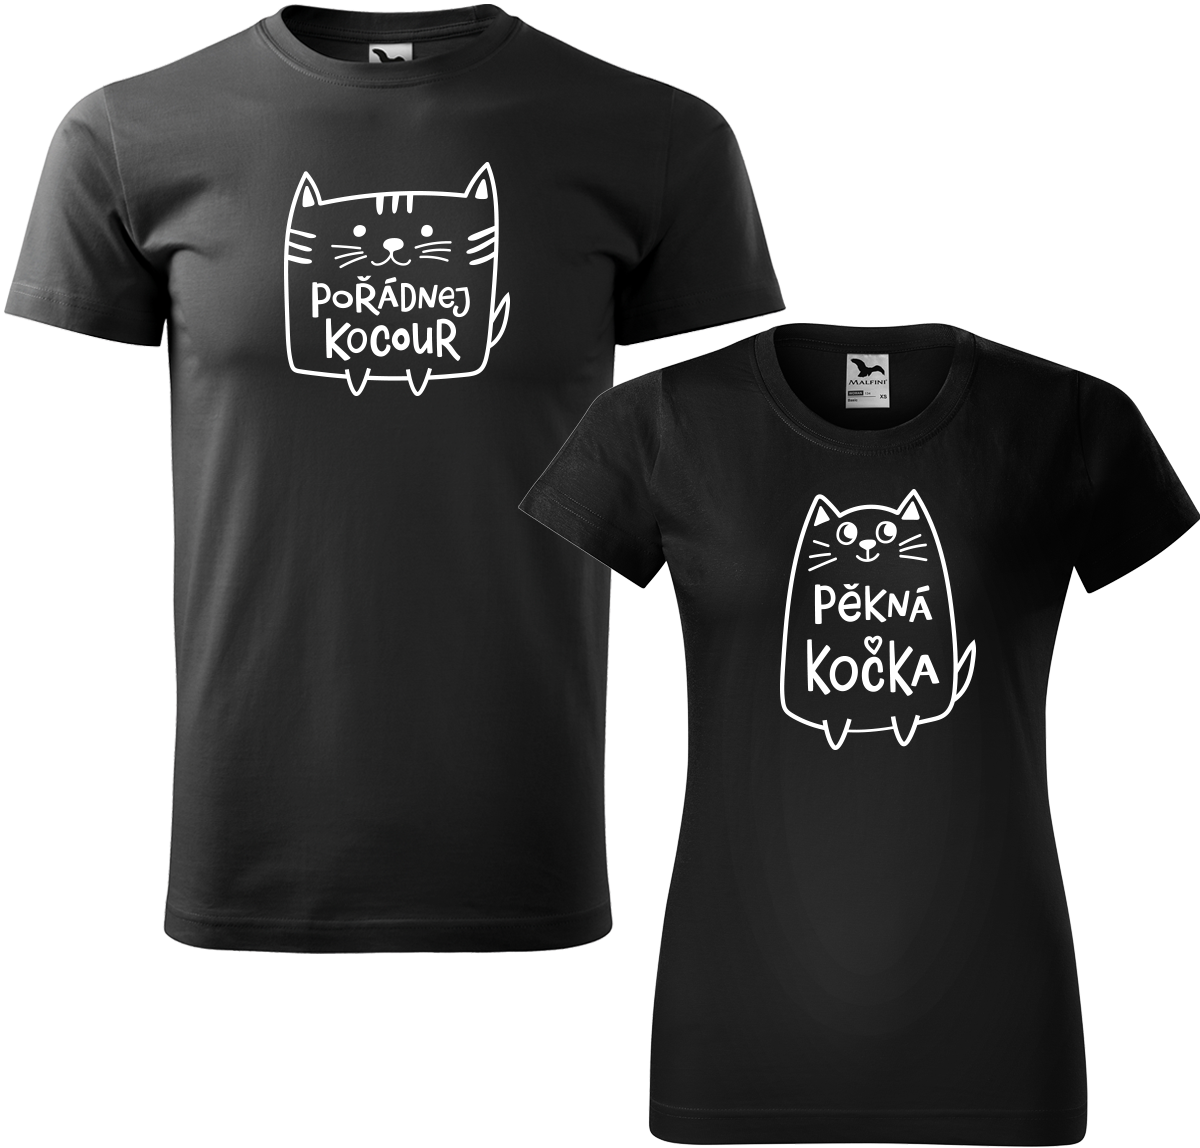 Trička pro páry - Pořádnej kocour a pěkná kočka Barva: Černá (01), Velikost dámské tričko: L, Velikost pánské tričko: L